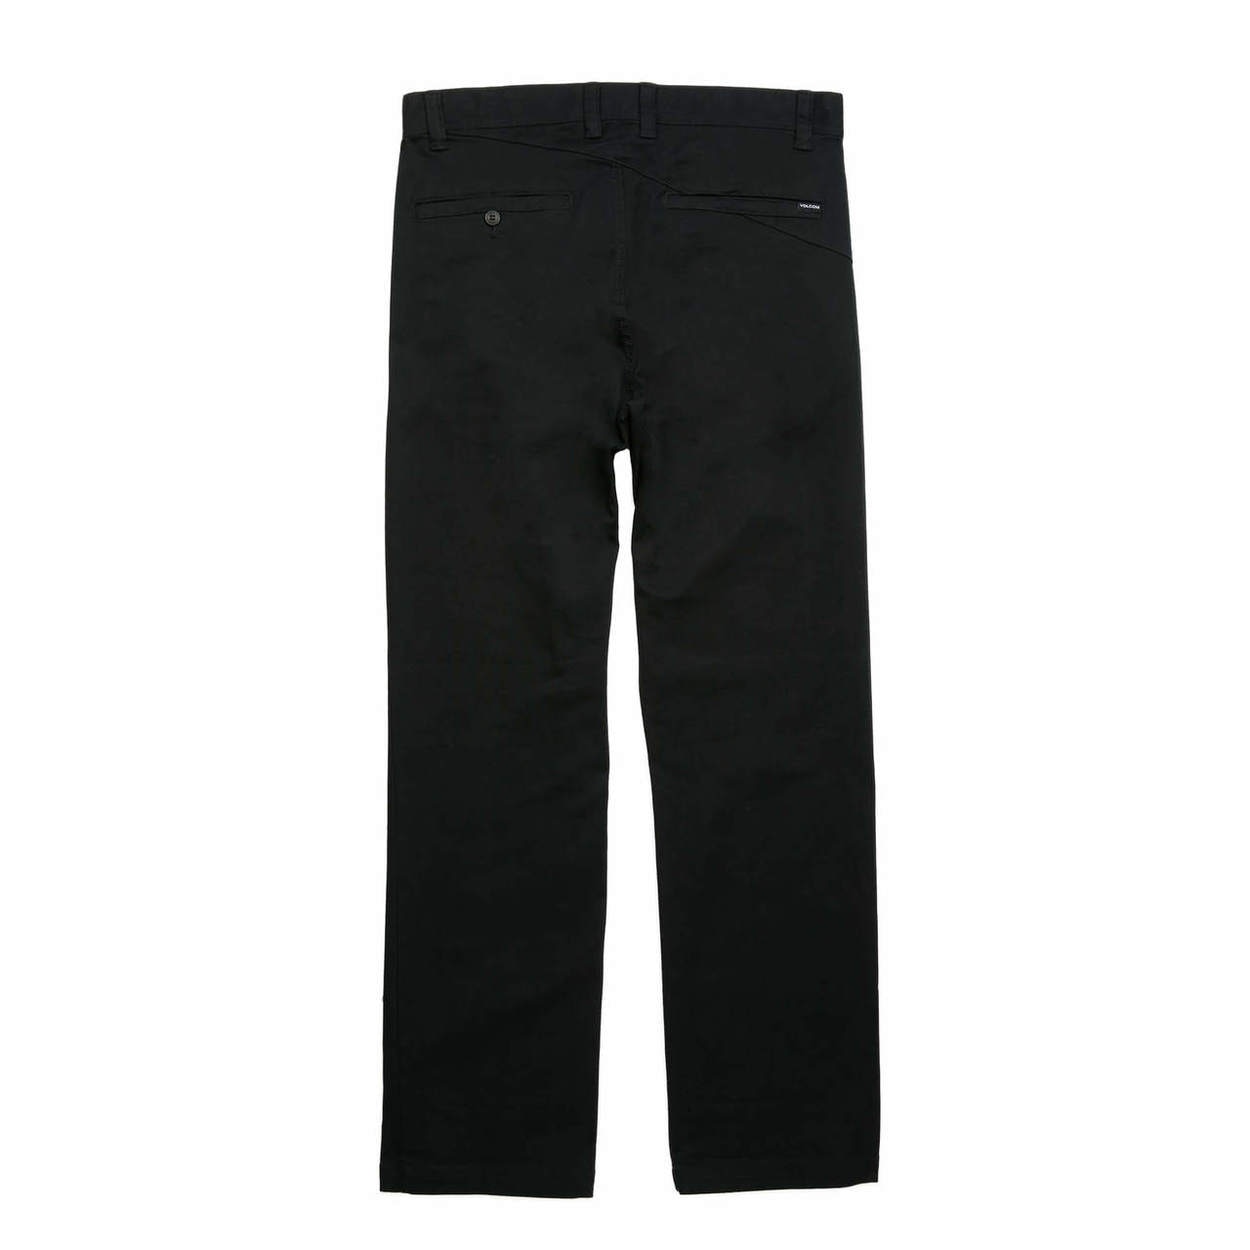 Volcom Frickin Regular Chino Pants - Black